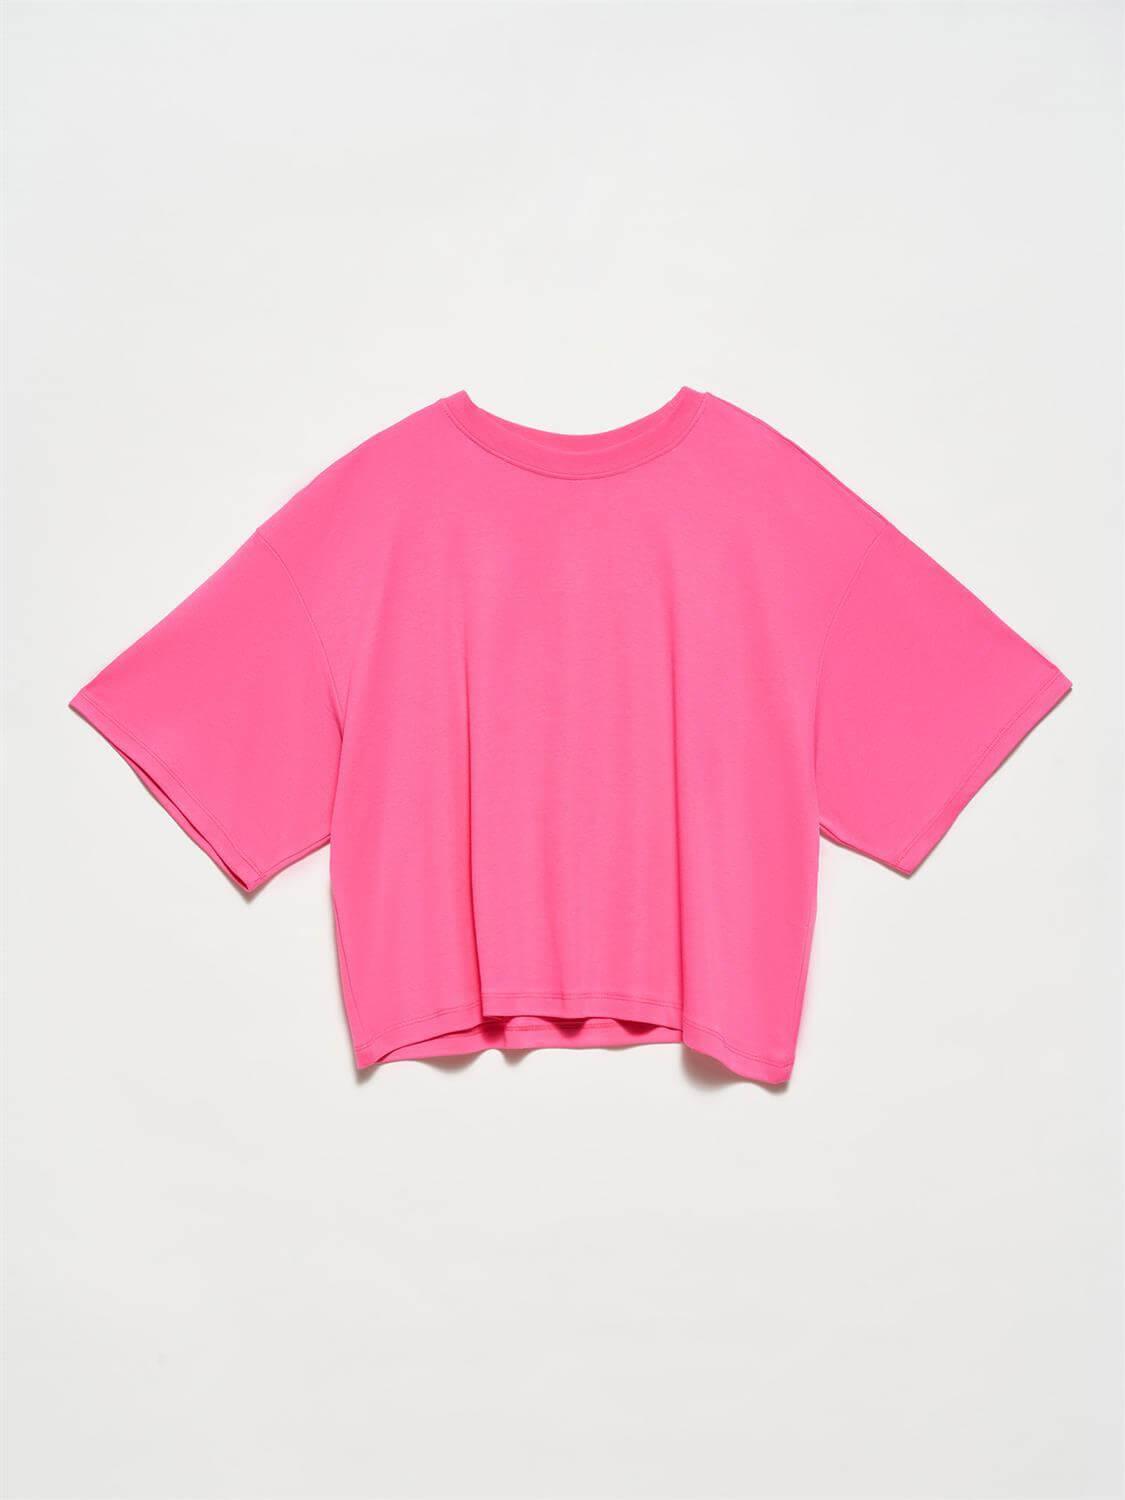 Basic T-Shirt Pink / S / 4 ZEFASH